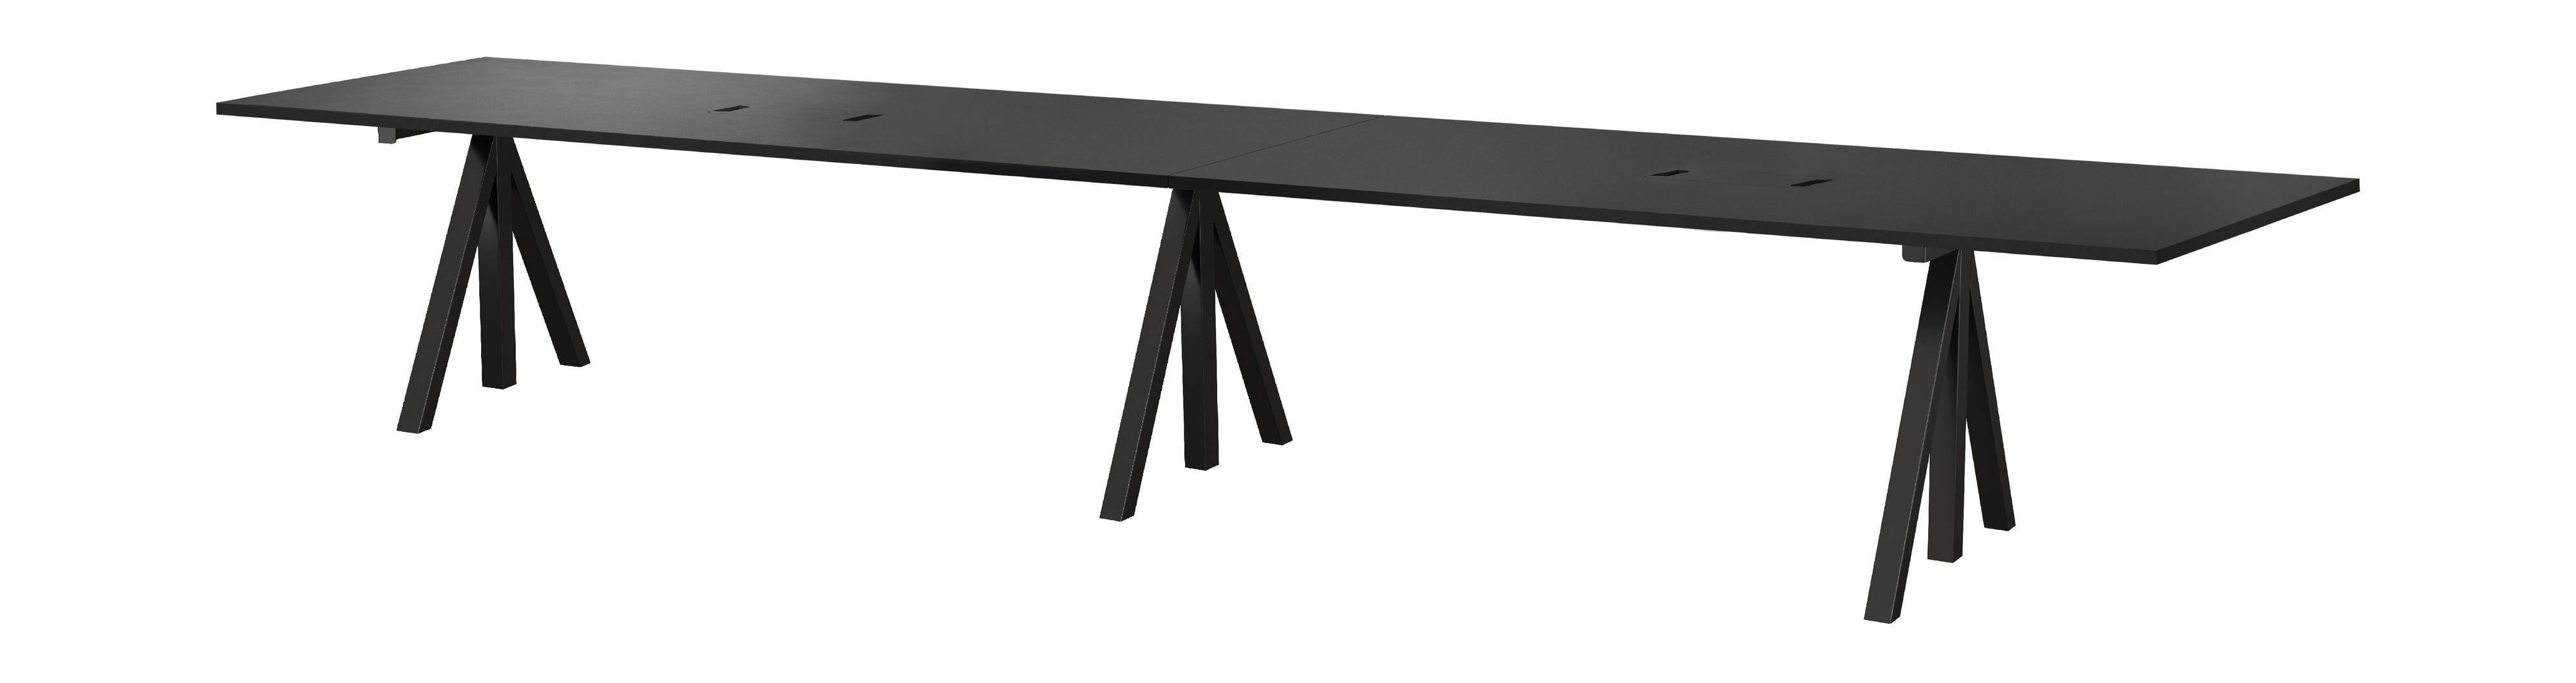 Tabla de conferencia ajustable de altura de muebles de cuerda 90x180 cm, negro/negro